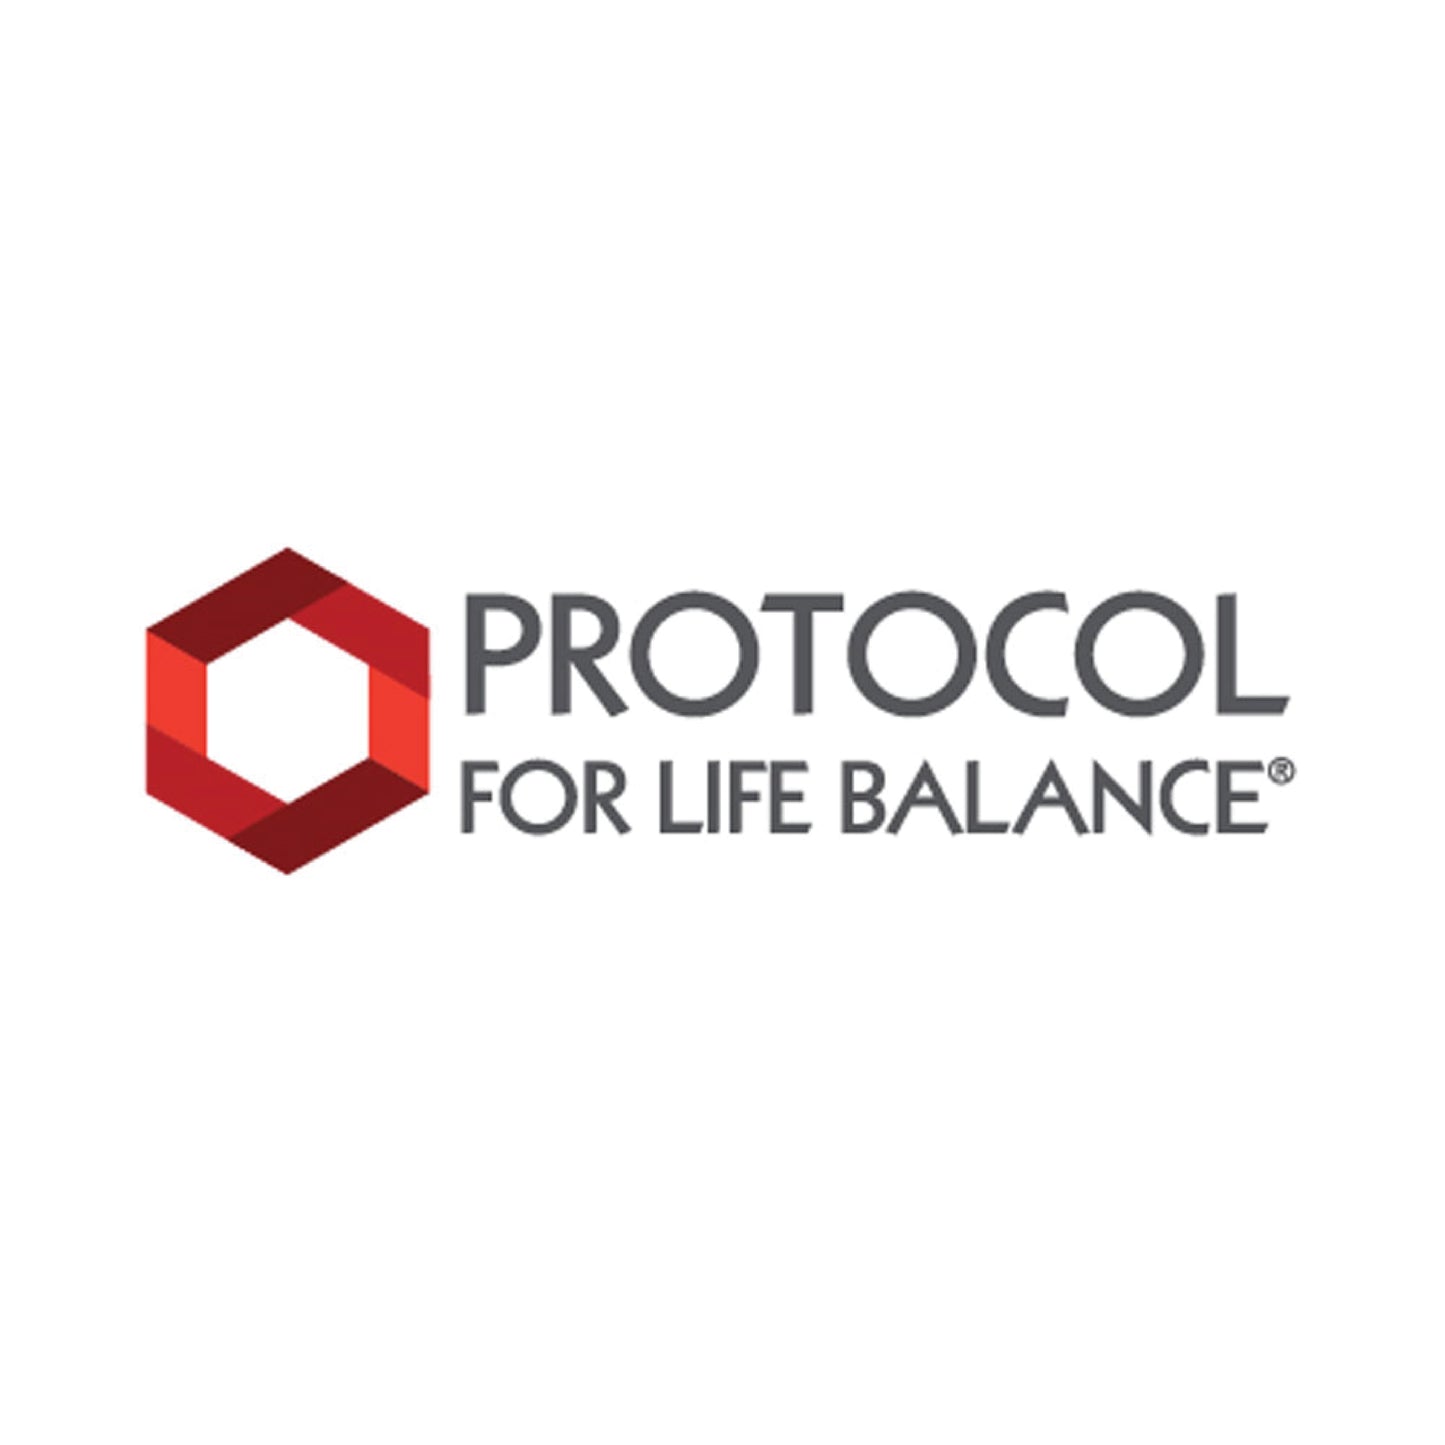 Protocol for Life Balance, Cordyceps, 750 mg, 90 Veg Capsules - Bloom Concept